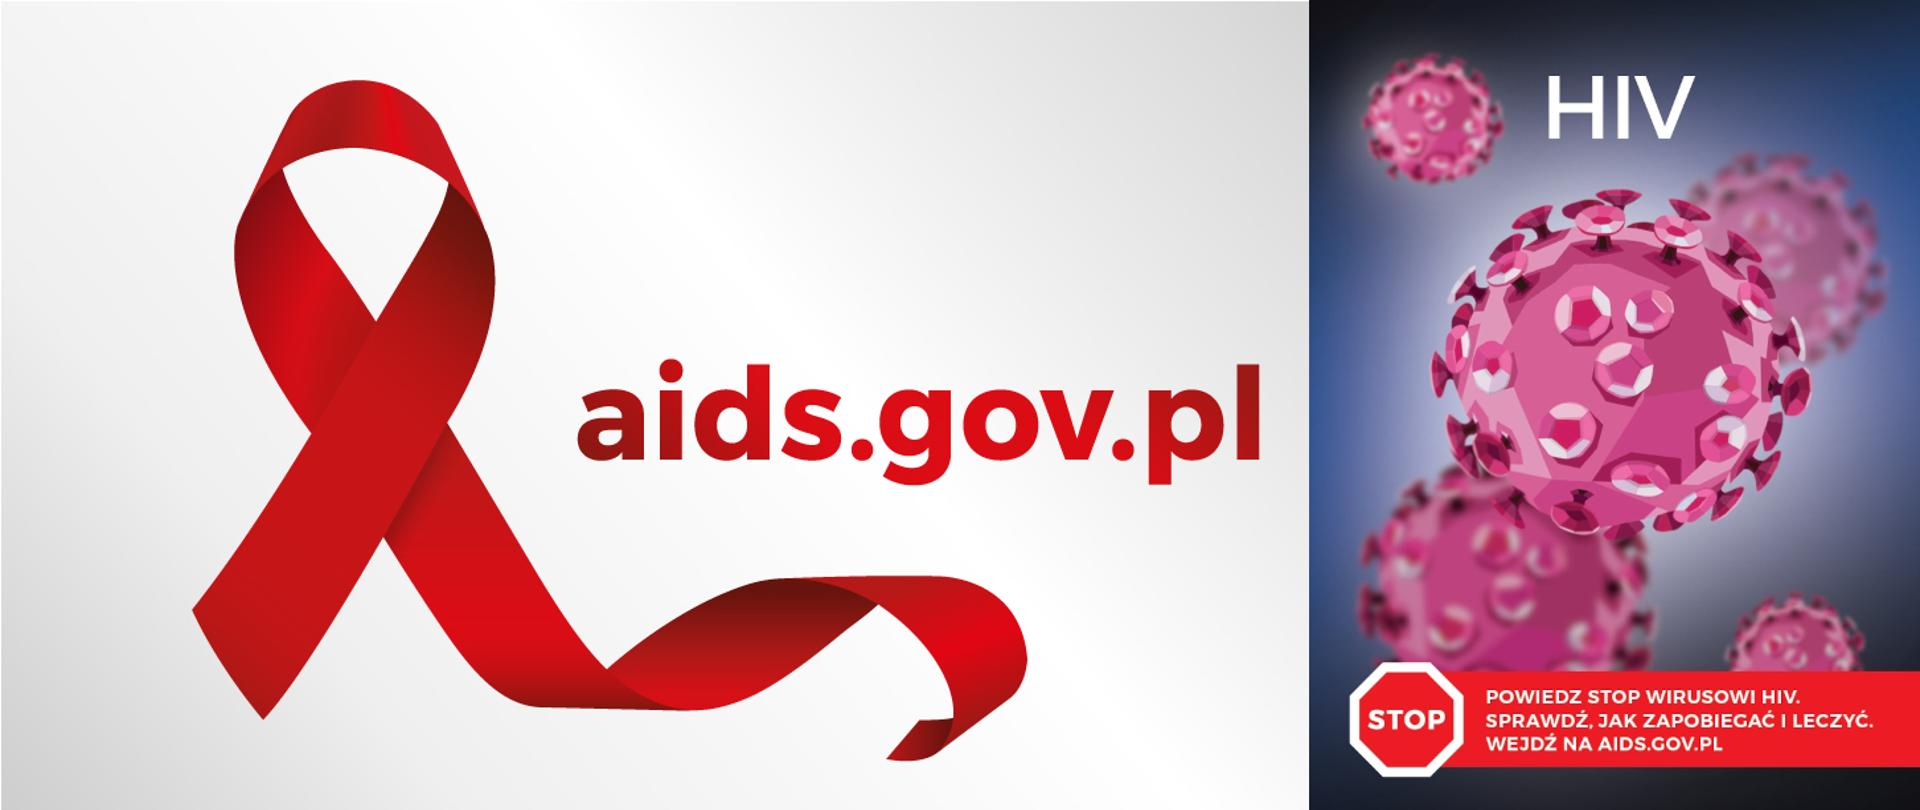 Na szarym tle w lewej części czerwona kokardka symbol solidarności z osobami żyjącymi z HIV, chorymi na AIDS, czerwony napis aids.gov.pl. Po prawej stronie podglądowa grafika wirusa HIV a na niej napis: powiedz stop wirusowi HIV, sprawdź jak zapobiegać i leczyć, wejdź na aids.gov.pl